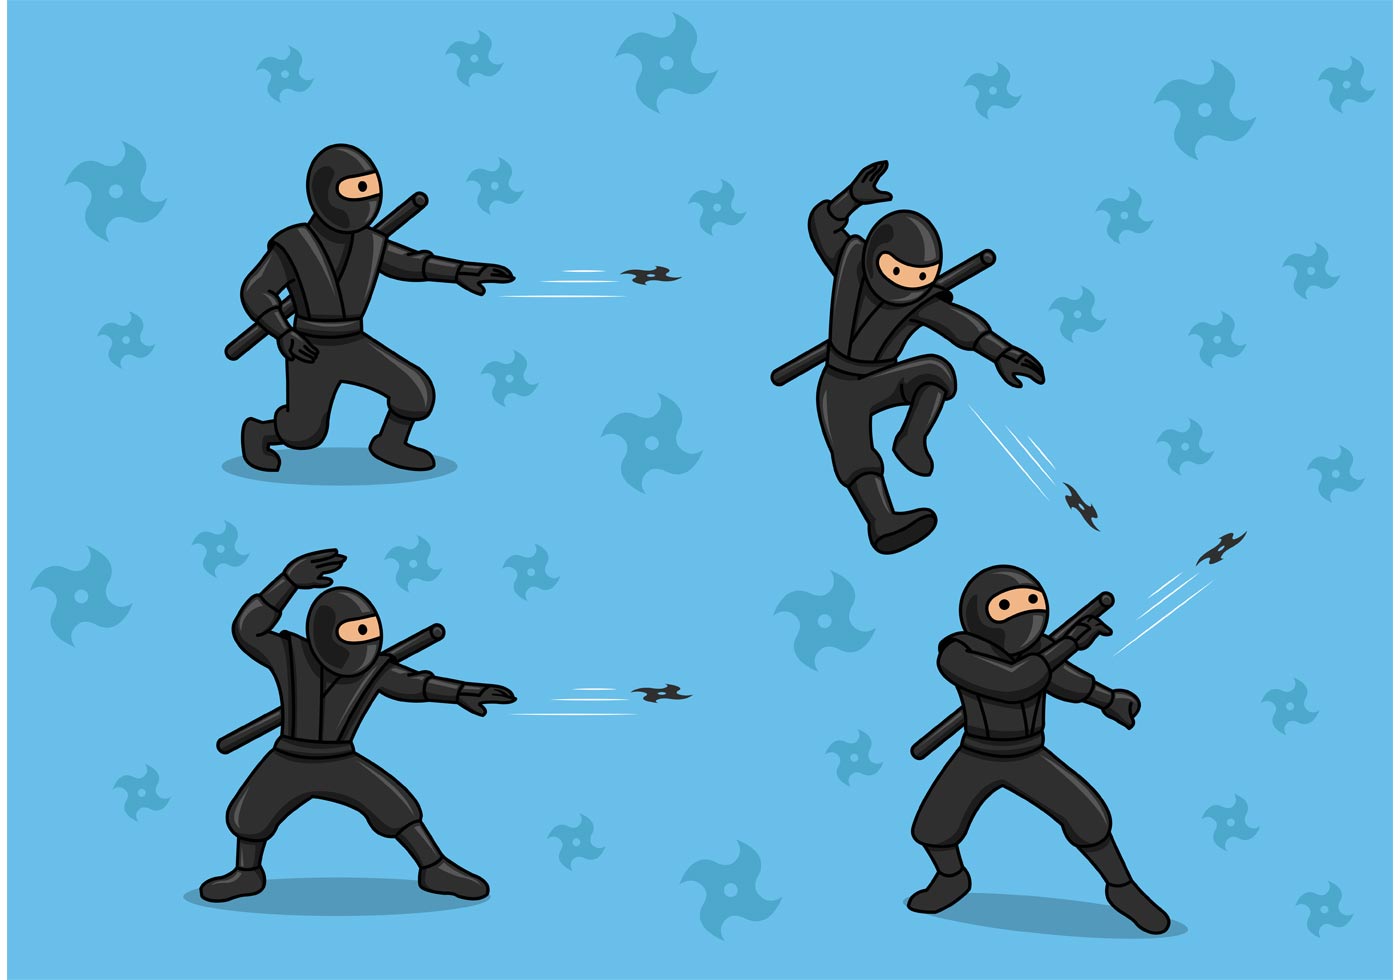 Ninja Throwing Star Vectors - Download Free Vector Art, Stock Graphics ...